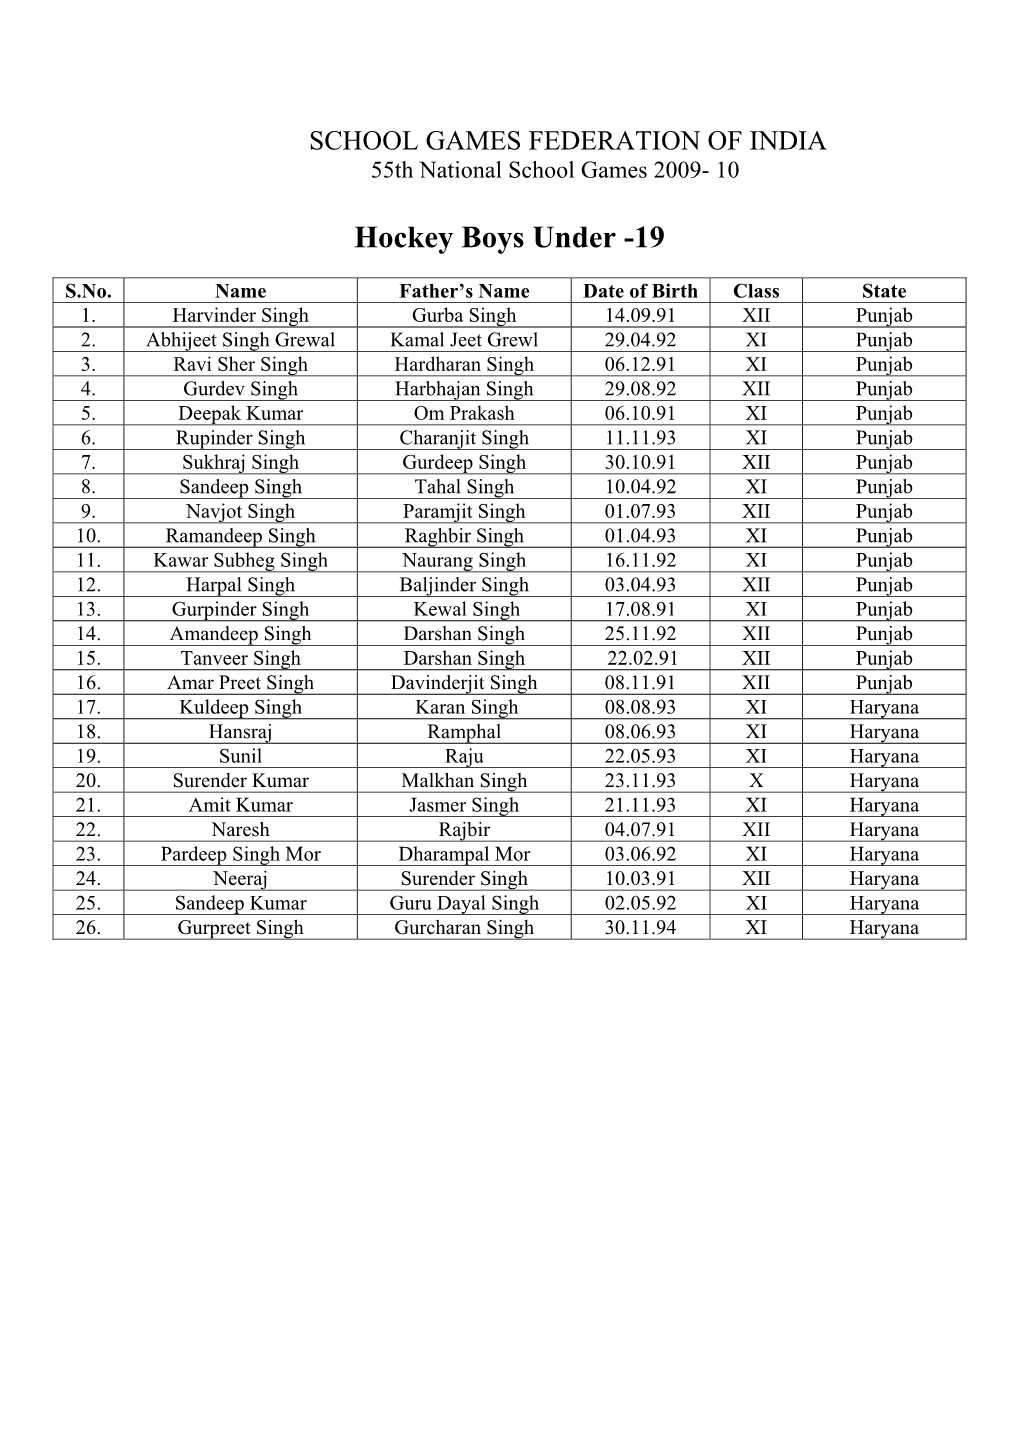 Hockey Boys Under -19